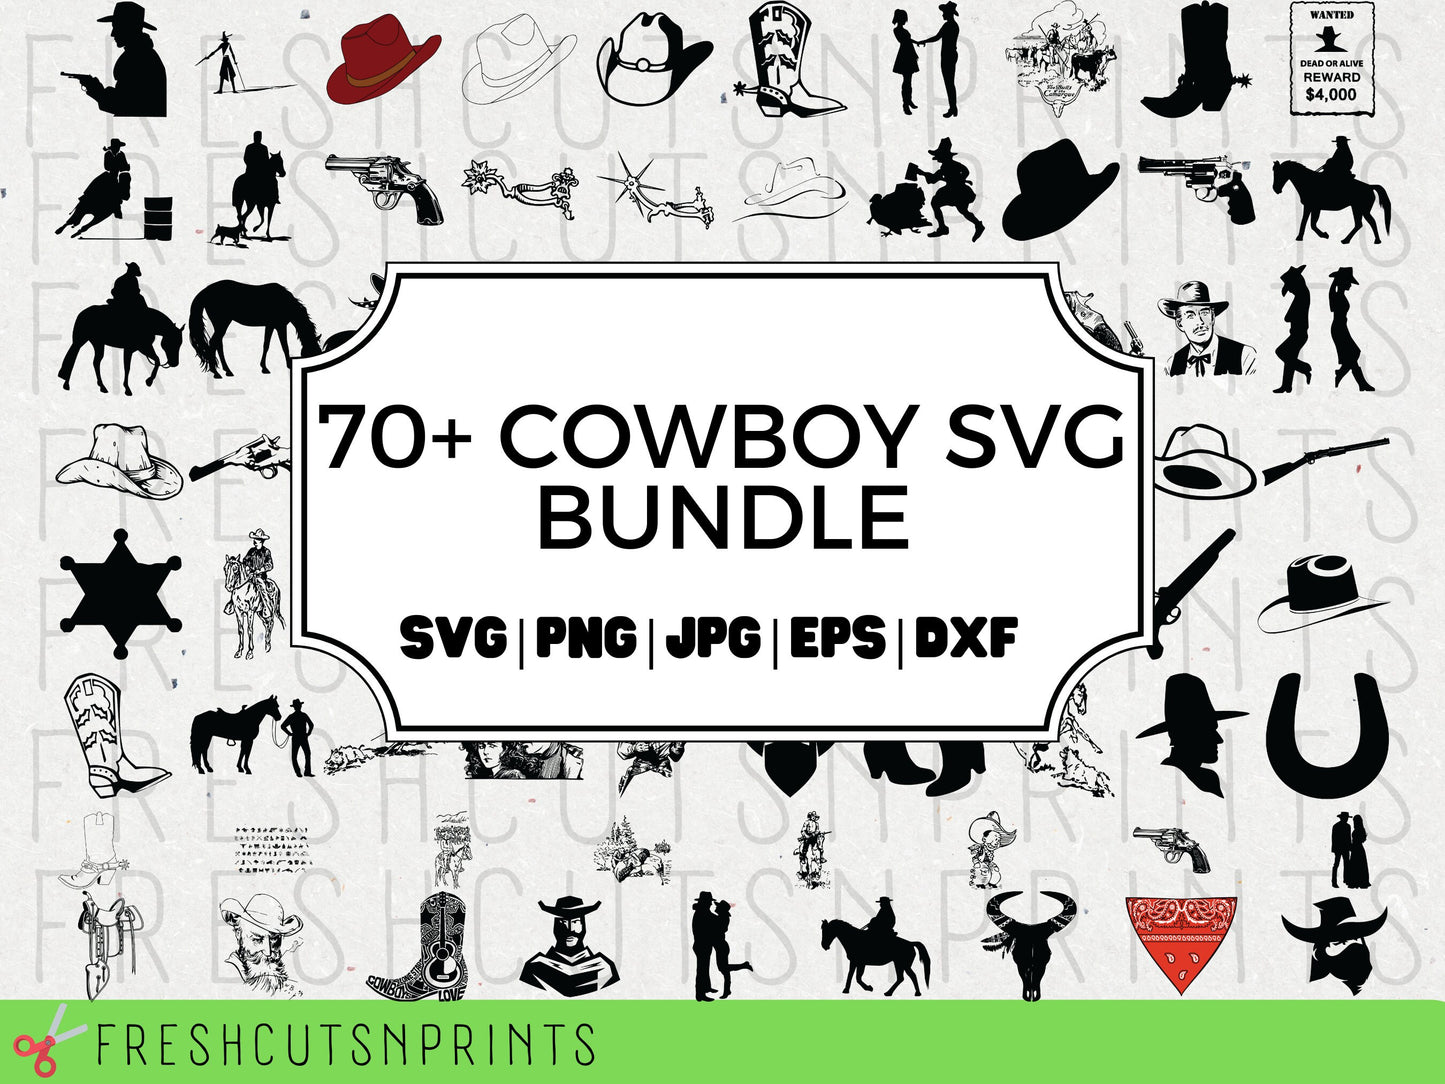 70+ Cowboys SVG Bundle , Cowboy hat svg, Cowboy silhouette, Western svg, Cowboy clipart, Cowboy Vector, Cowboy Decal, Rodeo Svg, Commercial